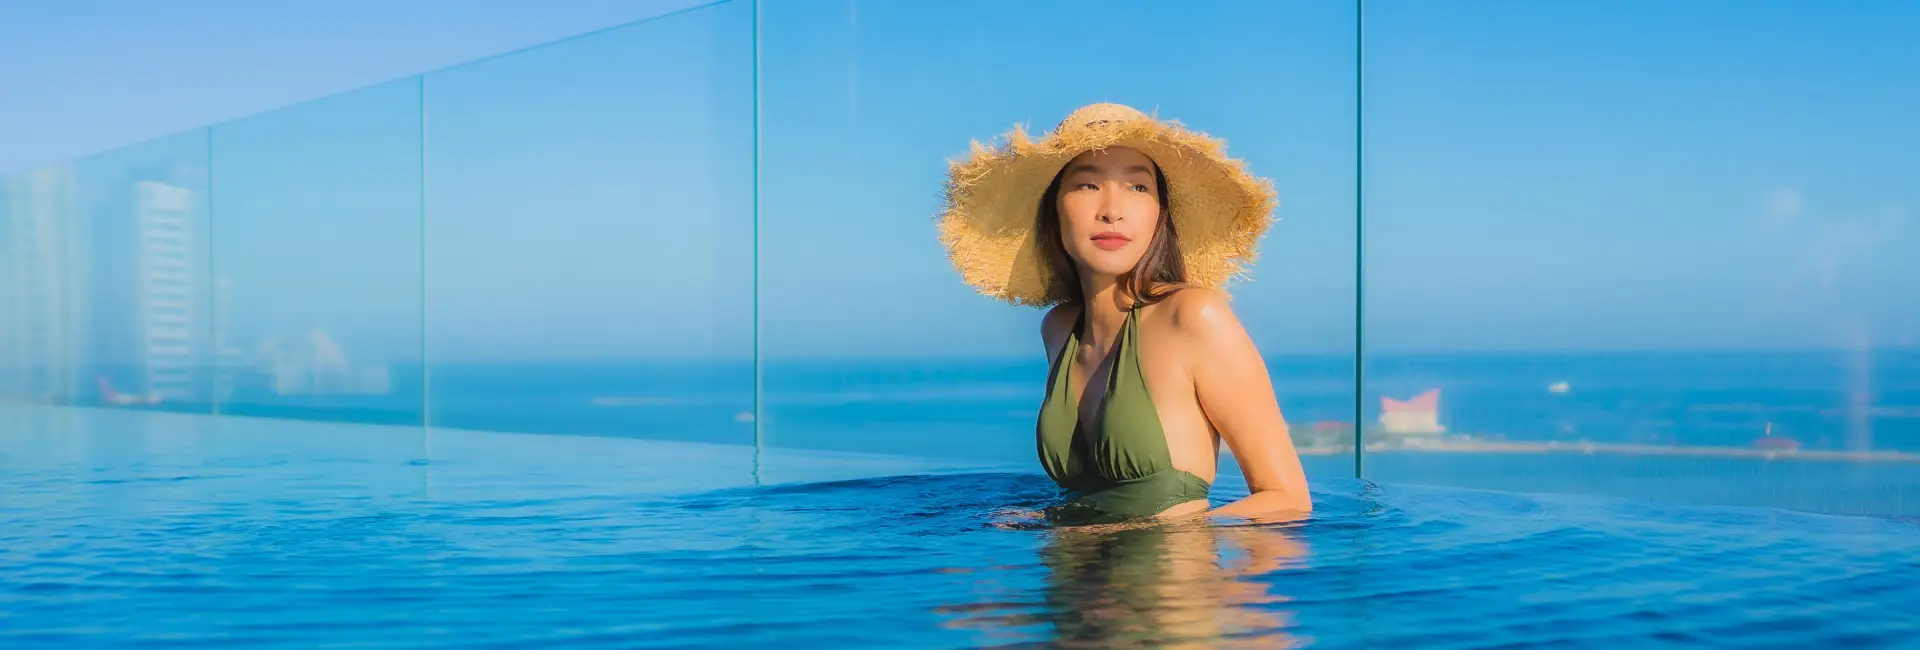 lady-wearing-green-swimsuit-hat-enjoying-pool